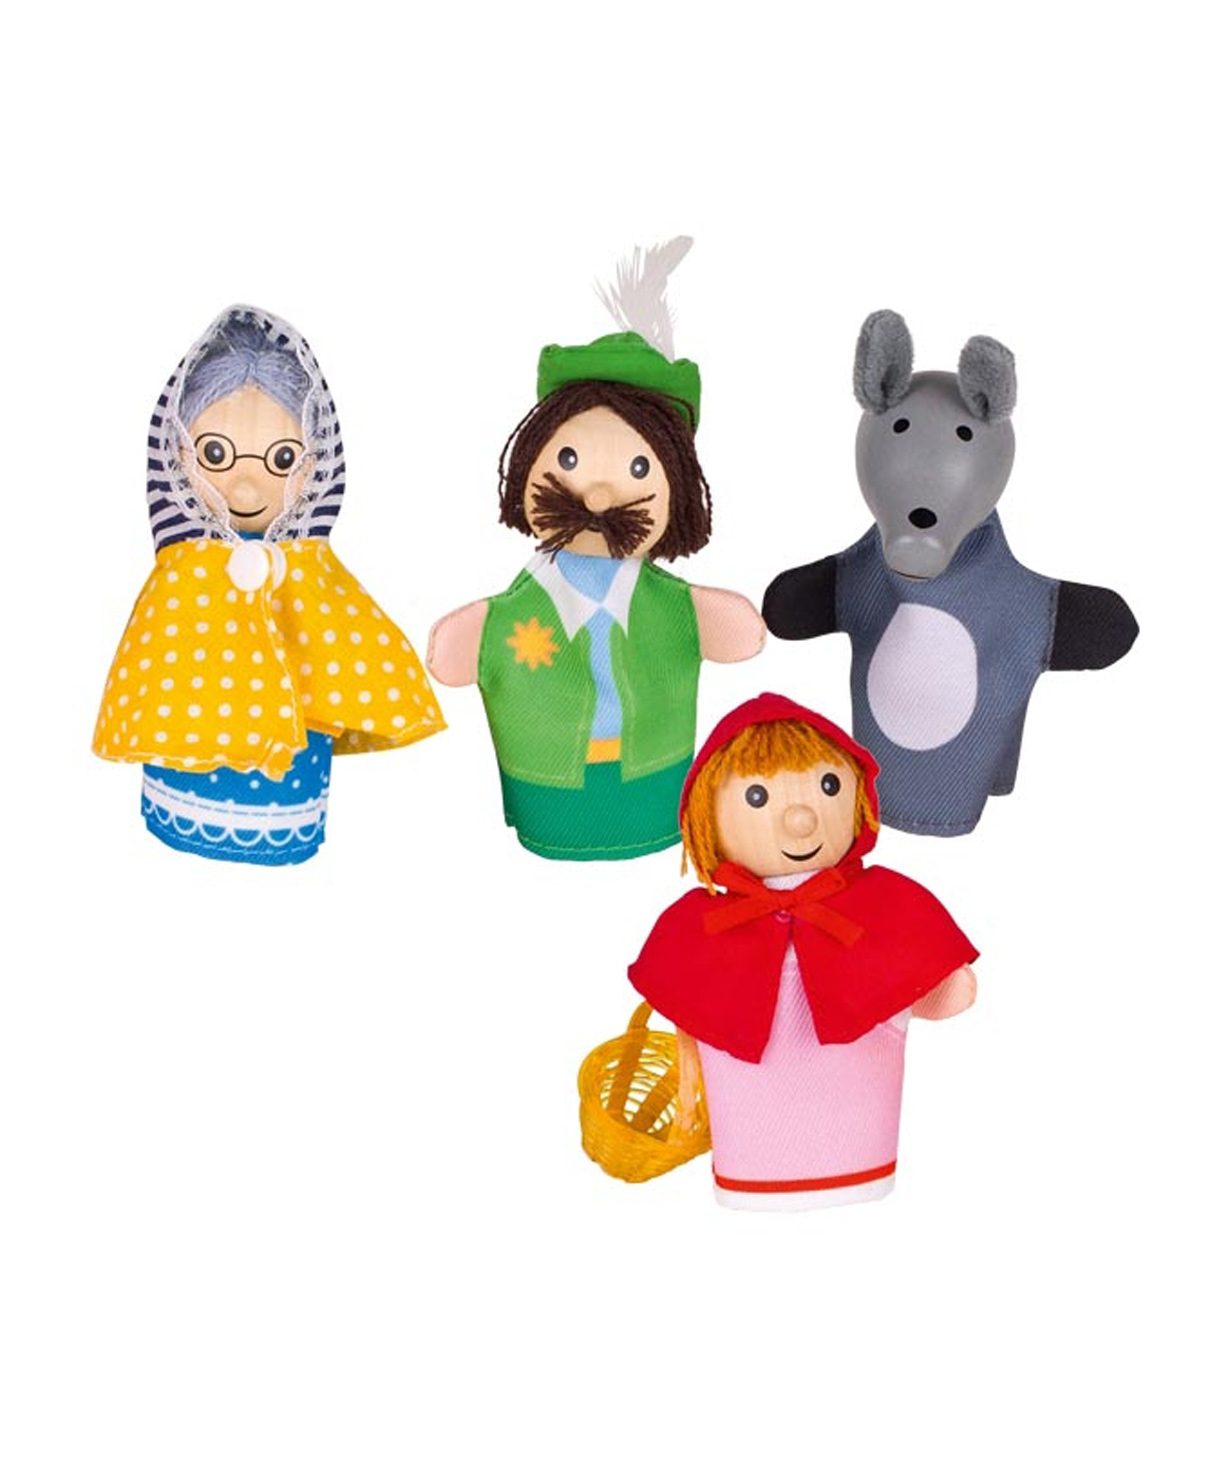 Խաղալիք «Goki Toys» մատի տիկնիկներ Կարմիր գլխարկ